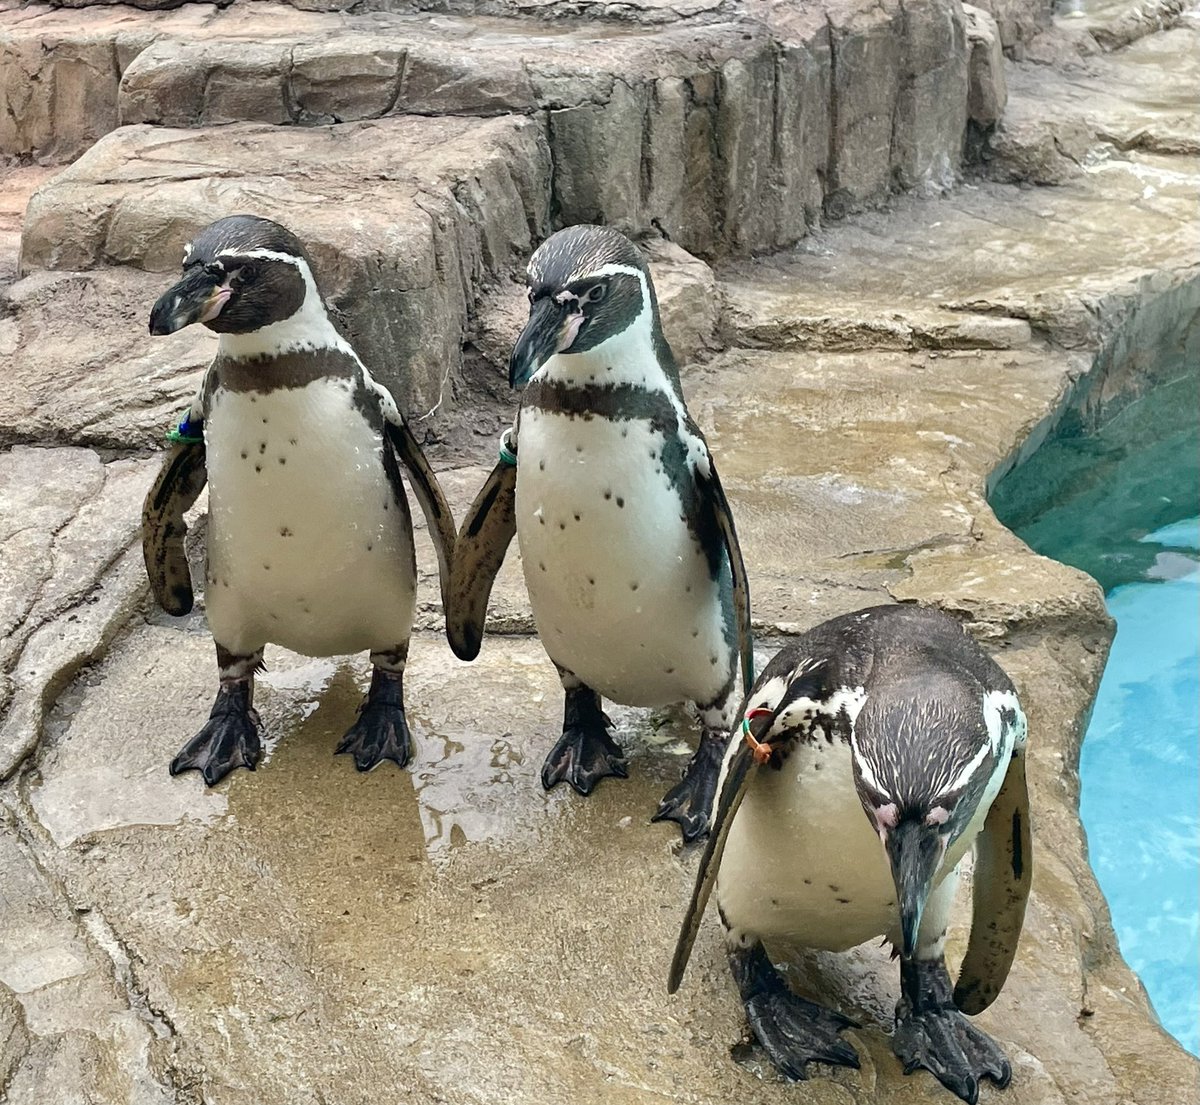 5月13日(月)は、休園日です。

#熊本市動植物園
#フンボルトペンギン
#左ラン♂
#中央ジュン♂
#右オパール♀